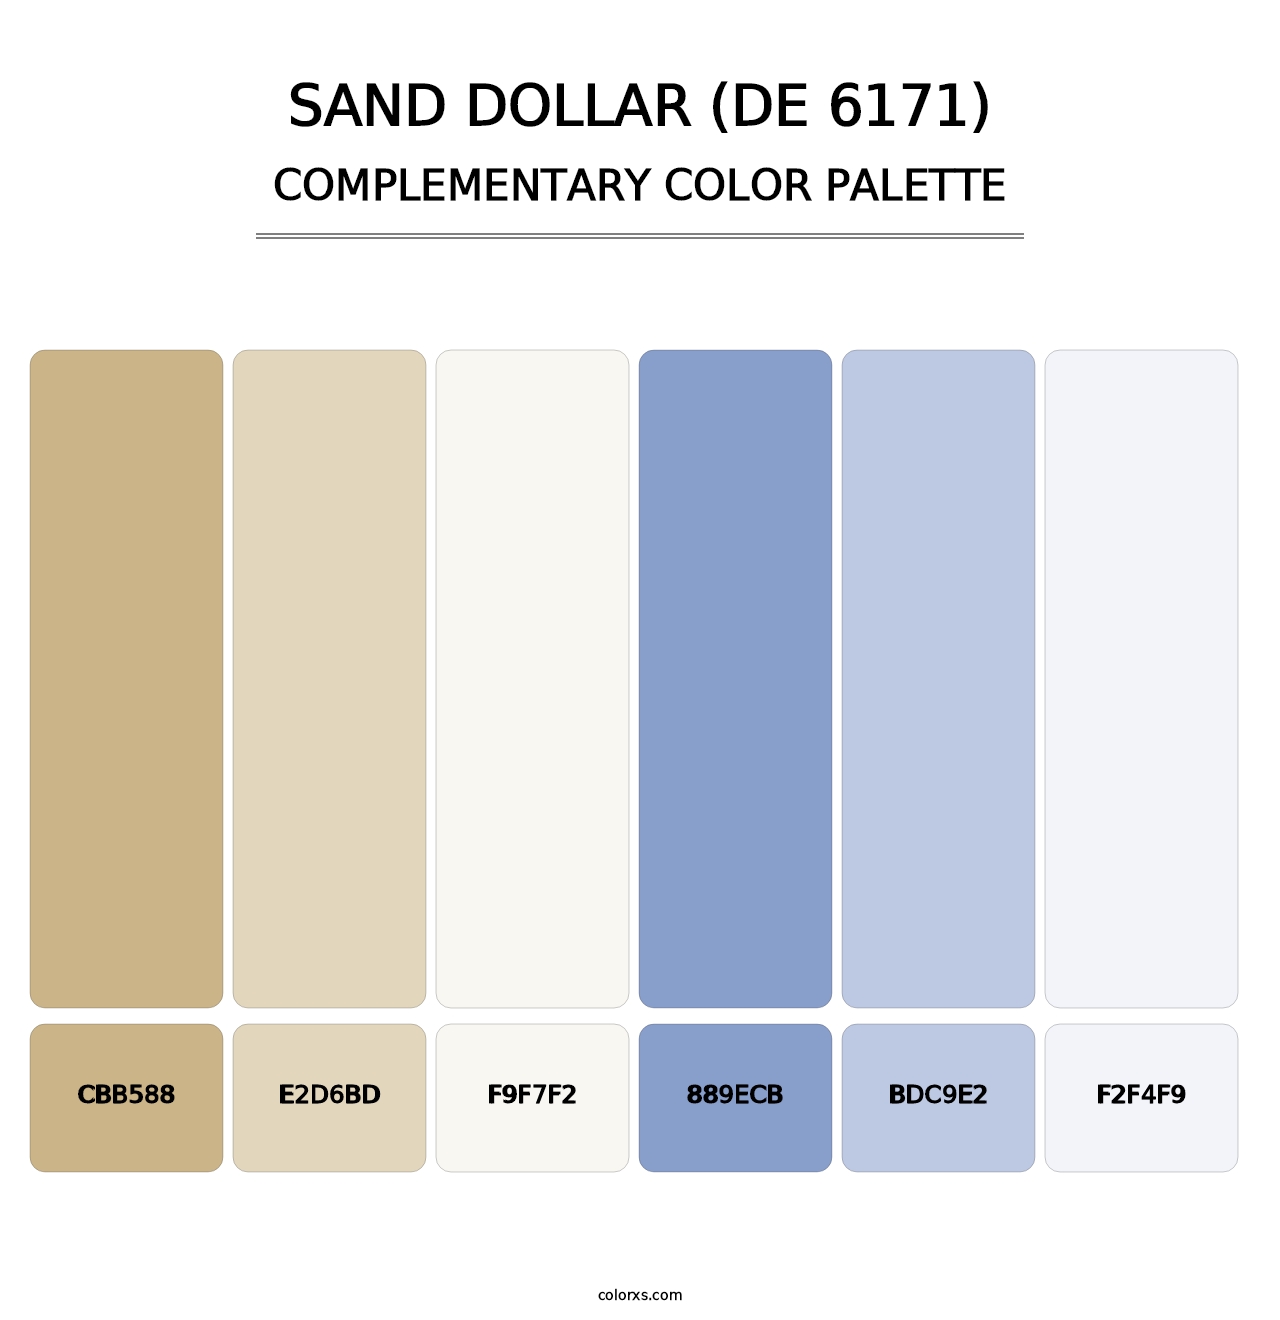 Sand Dollar (DE 6171) - Complementary Color Palette